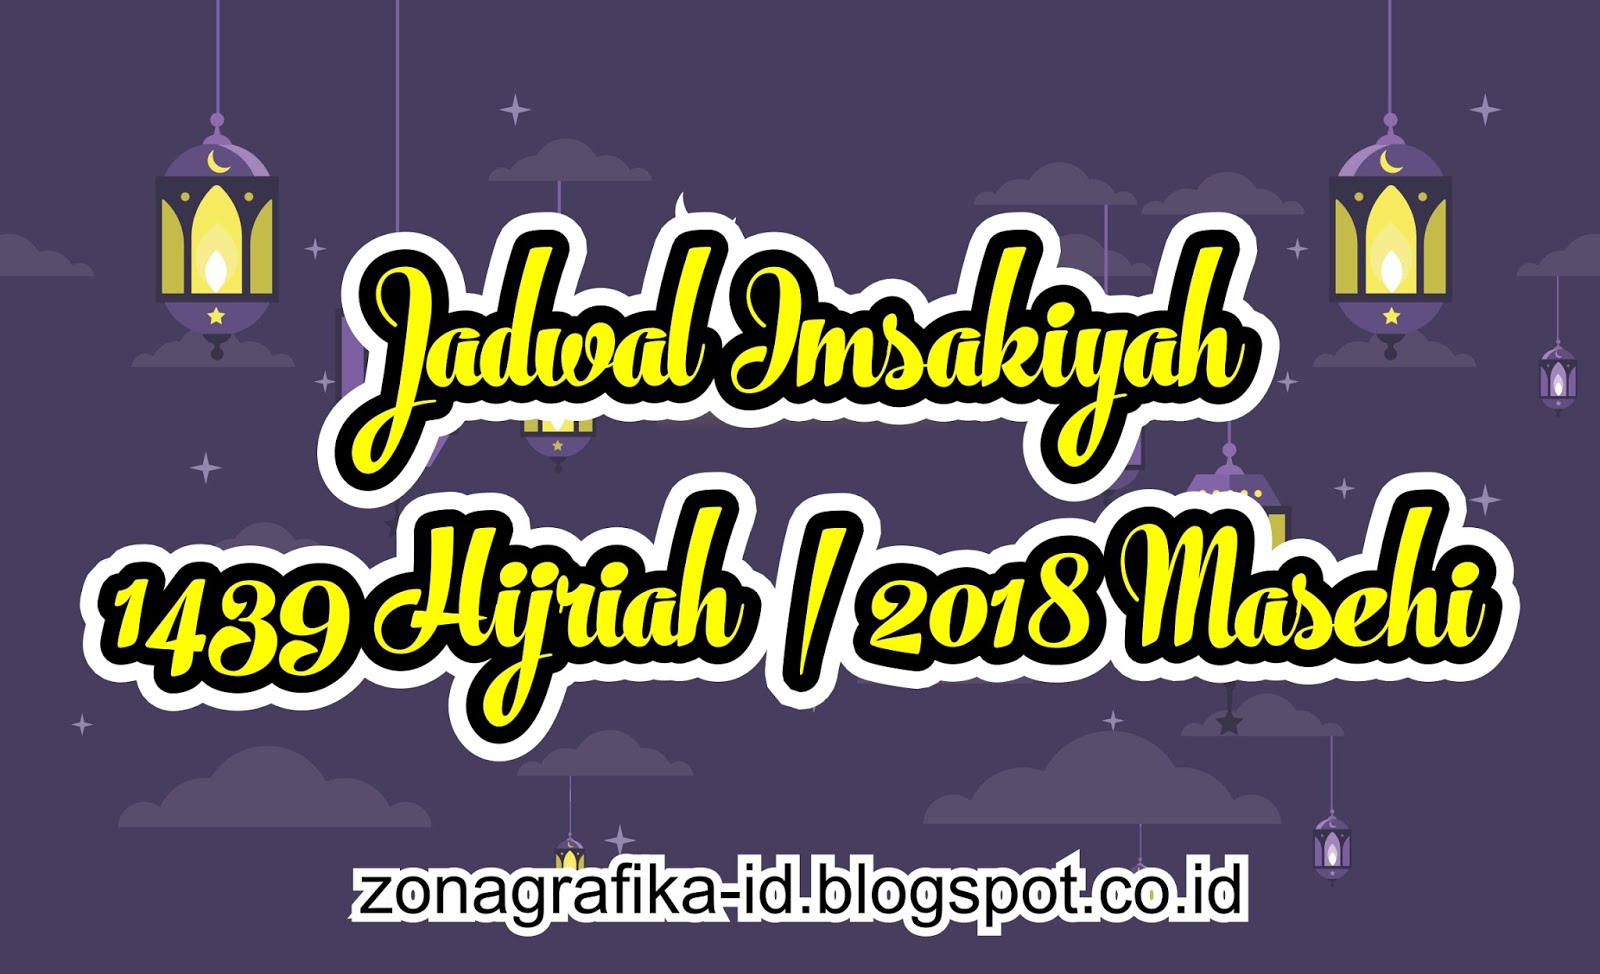 Download Jadwal Imsakiyah 1439 Hijriah / 2018 Masehi File 